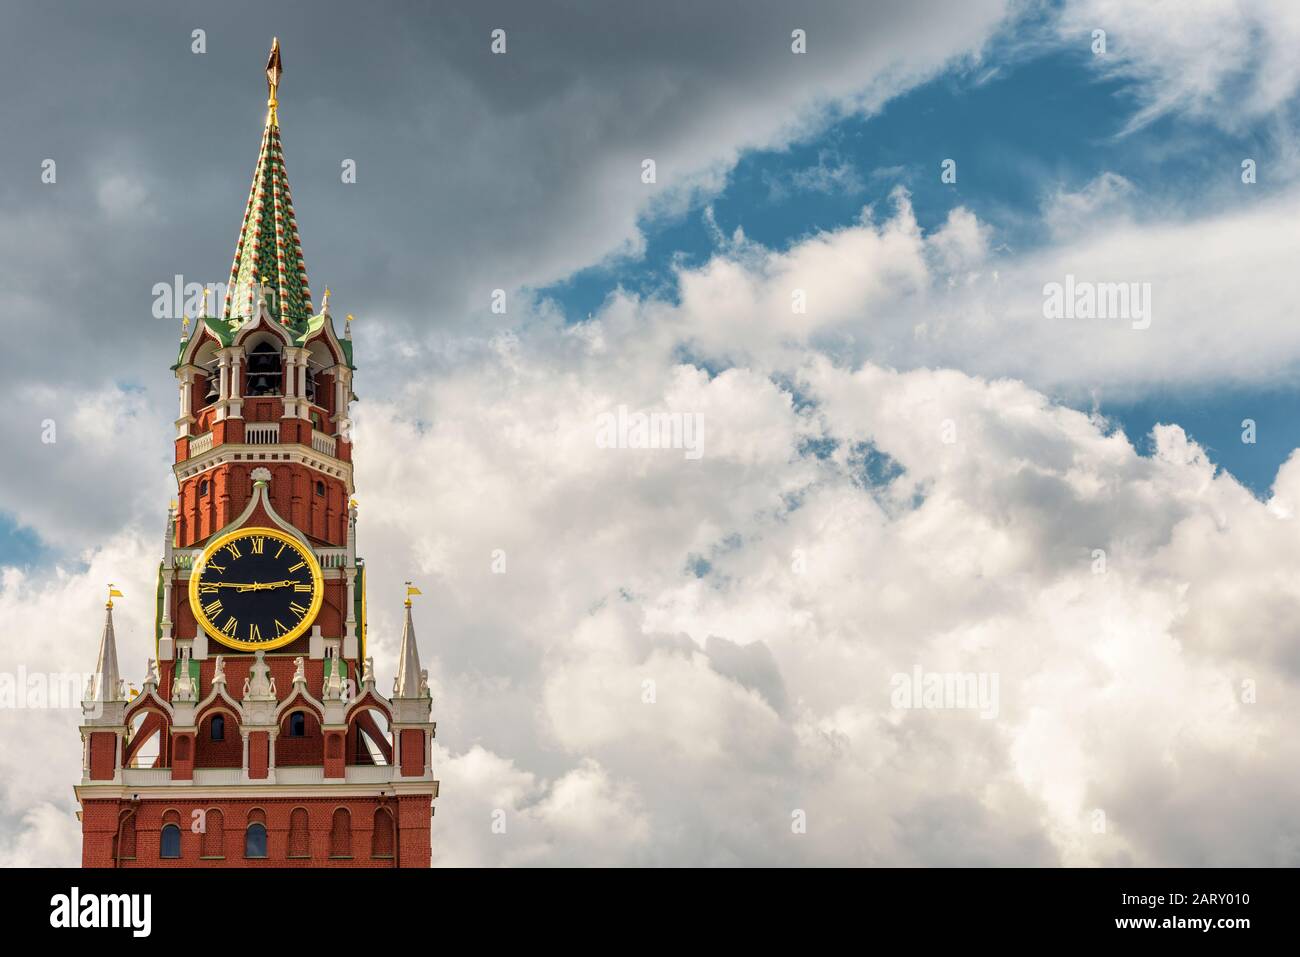 Der Spasskaja-Turm des Moskauer Kreml, Russland. Der Moskauer Kreml ist die Residenz des russischen präsidenten und die wichtigste Touristenattraktion Moskaus. Stockfoto